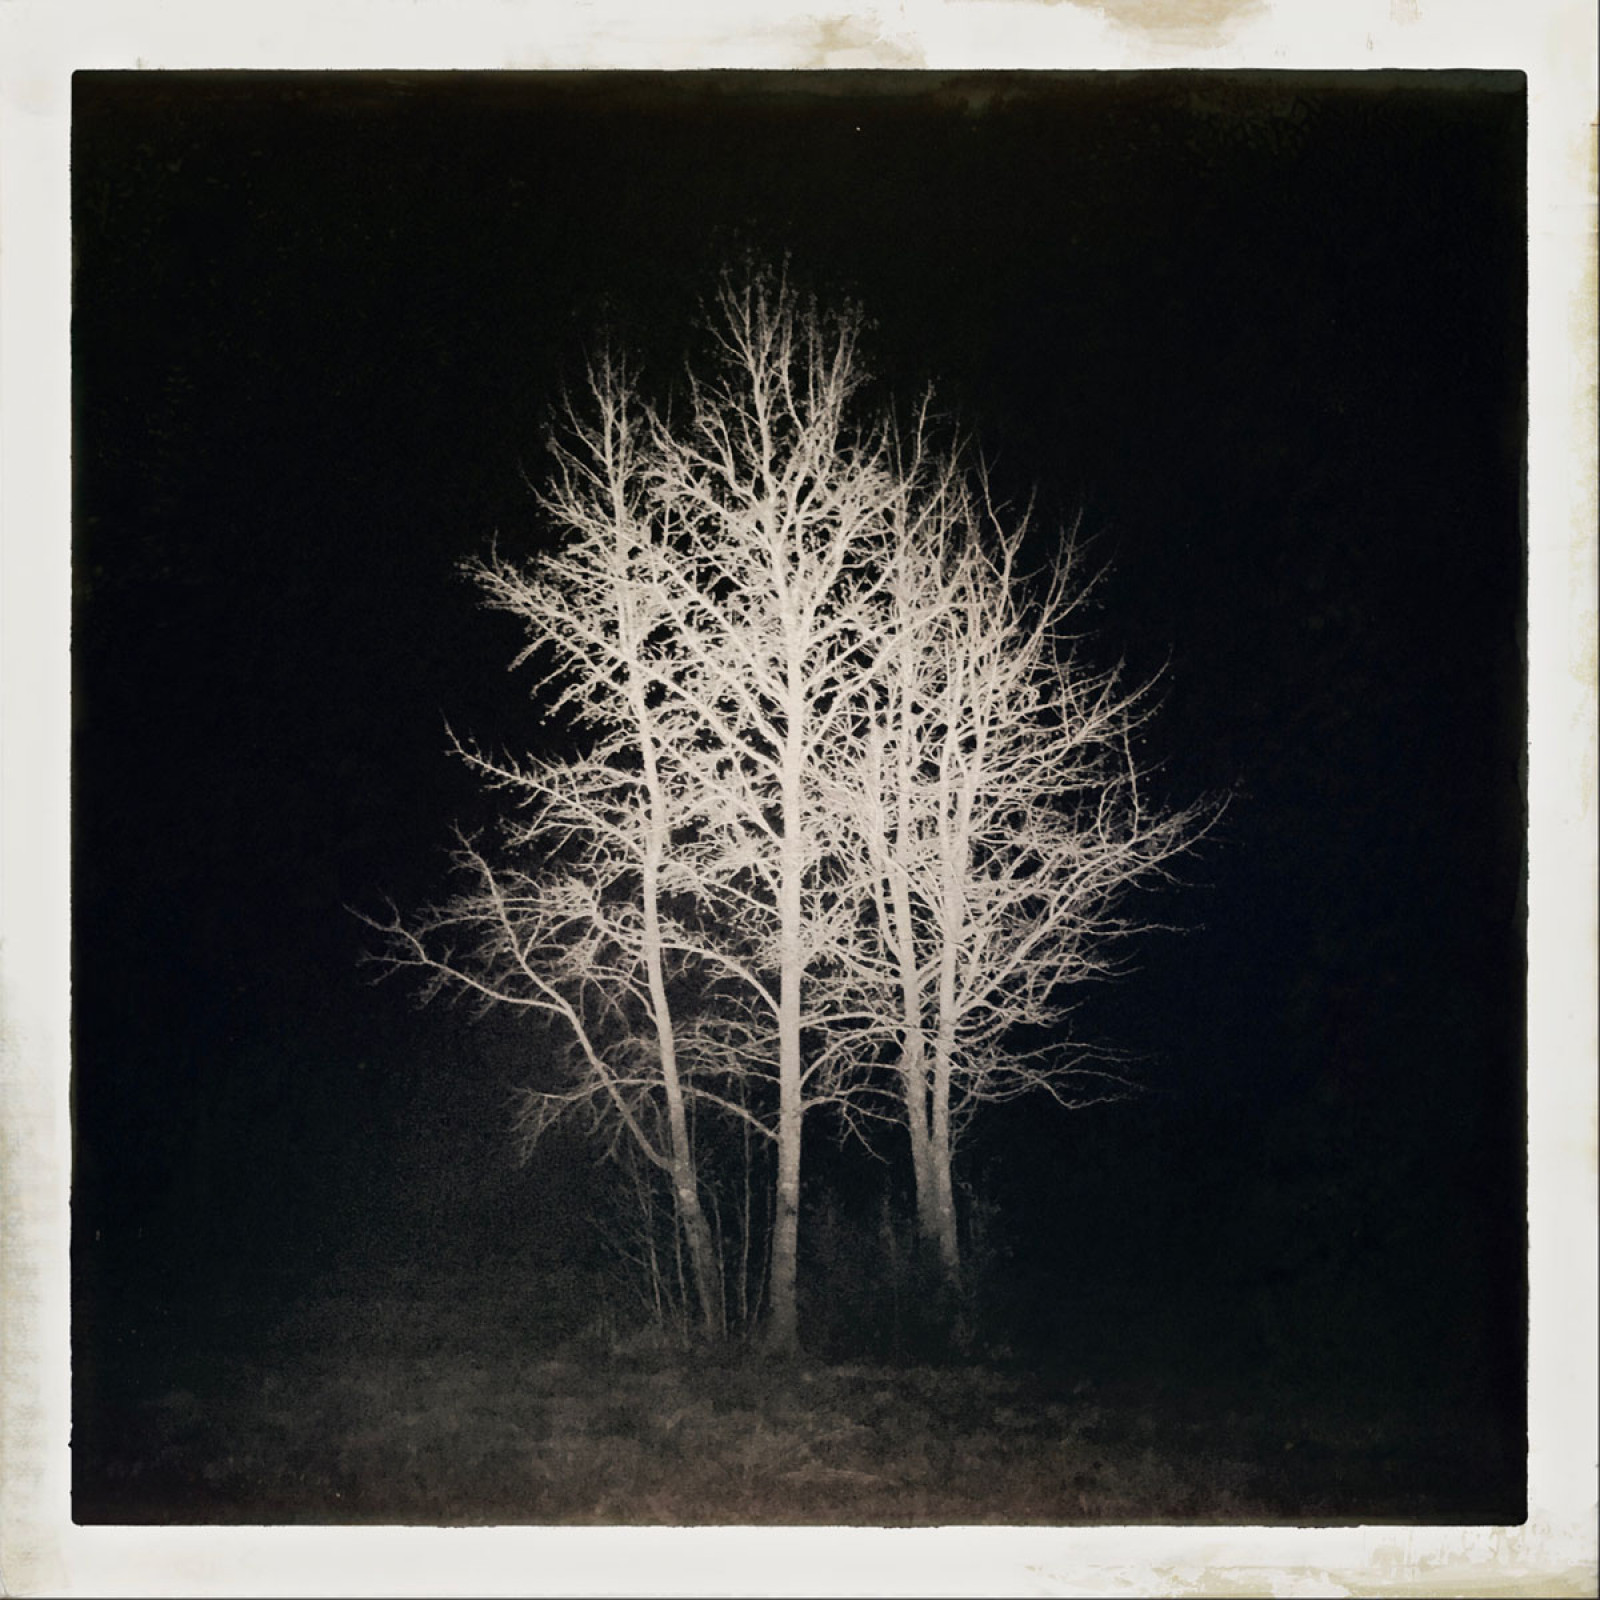 Категорія "Ніч". 2 місце: Thom Middlebrook, “Night Tree”